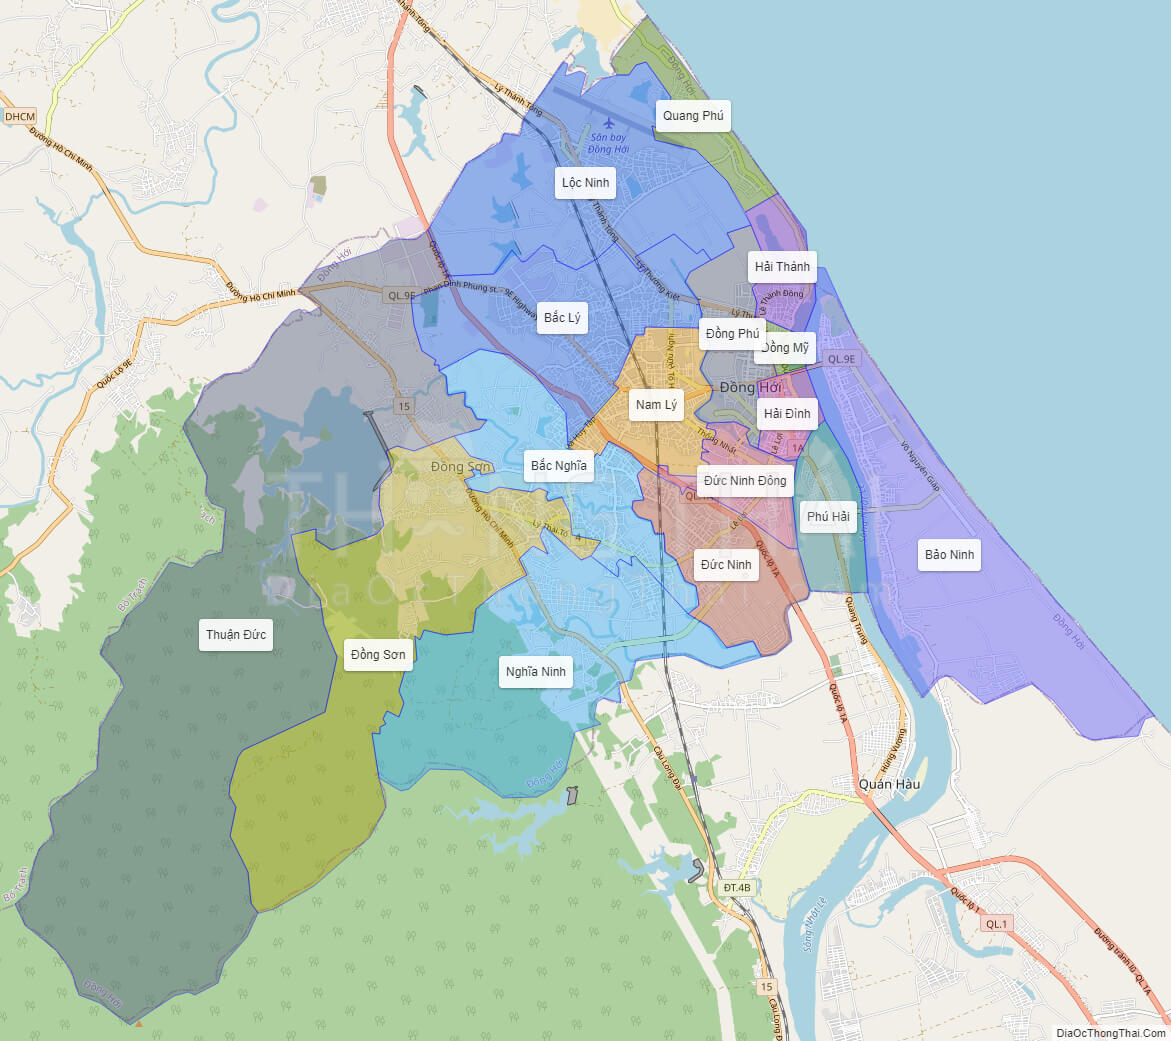 Bạn có thể tìm kiếm bản đồ thành phố Đồng Hới, Quảng Bình ở đâu trên Internet?